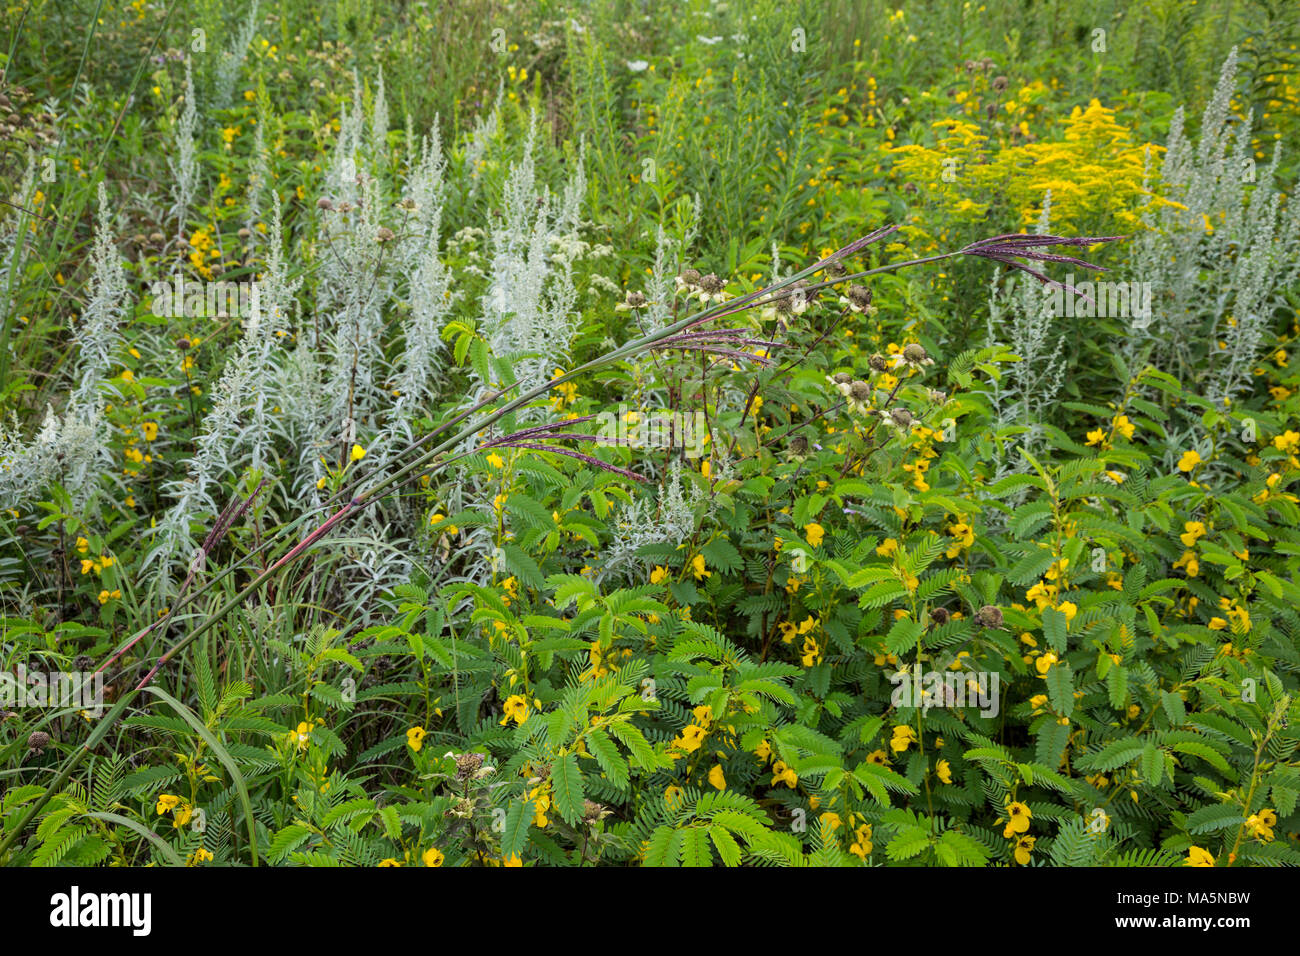 Ein Conservation Reserve Erhaltung einheimischer Arten: Bluestem lehnt sich diagonal von unten über verschiedene wilde Gräser und Blumen. Iowa. Stockfoto